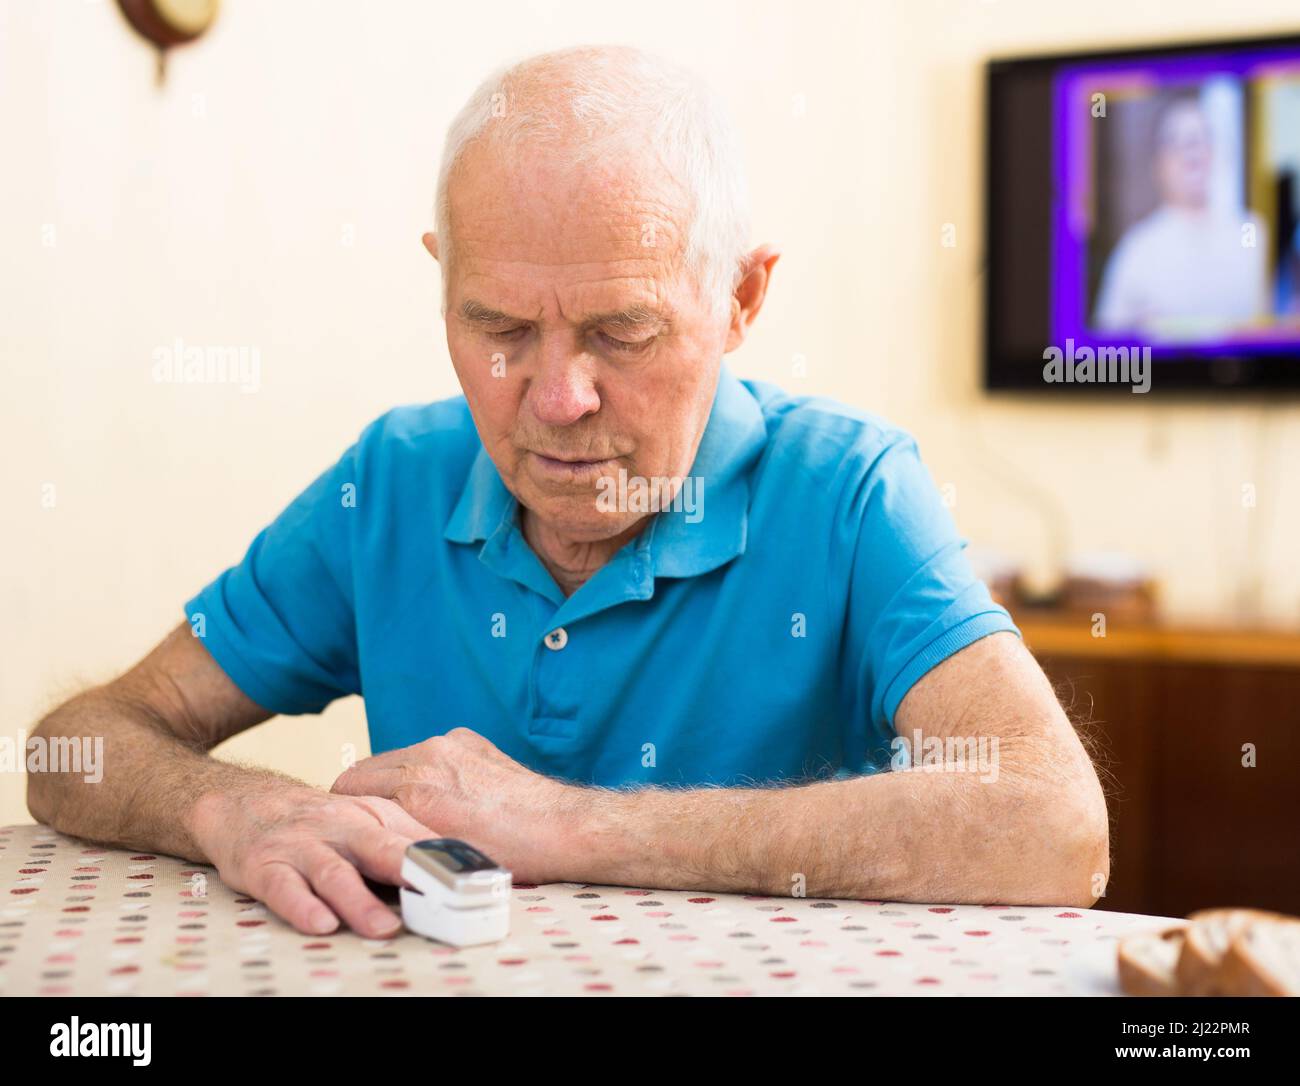 Besorgter älterer Mann, der sich zu Hause die Sauerstoffsättigung misst Stockfoto